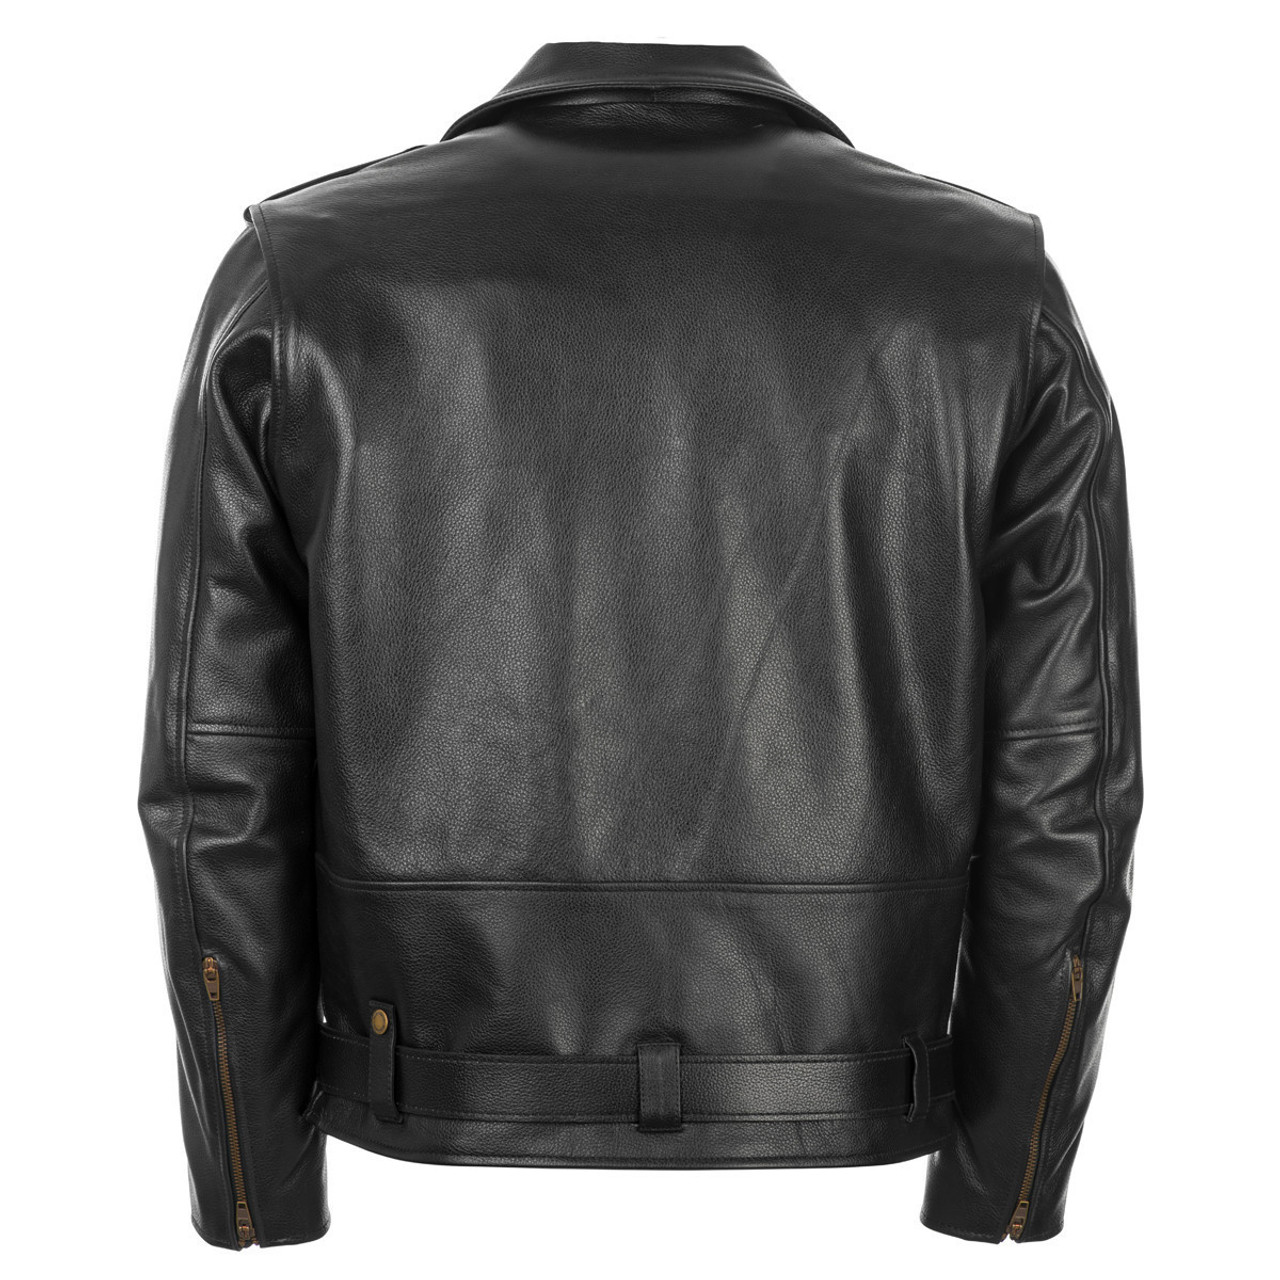 Highway 21 Murtaugh Motorcycle Leather Jacket